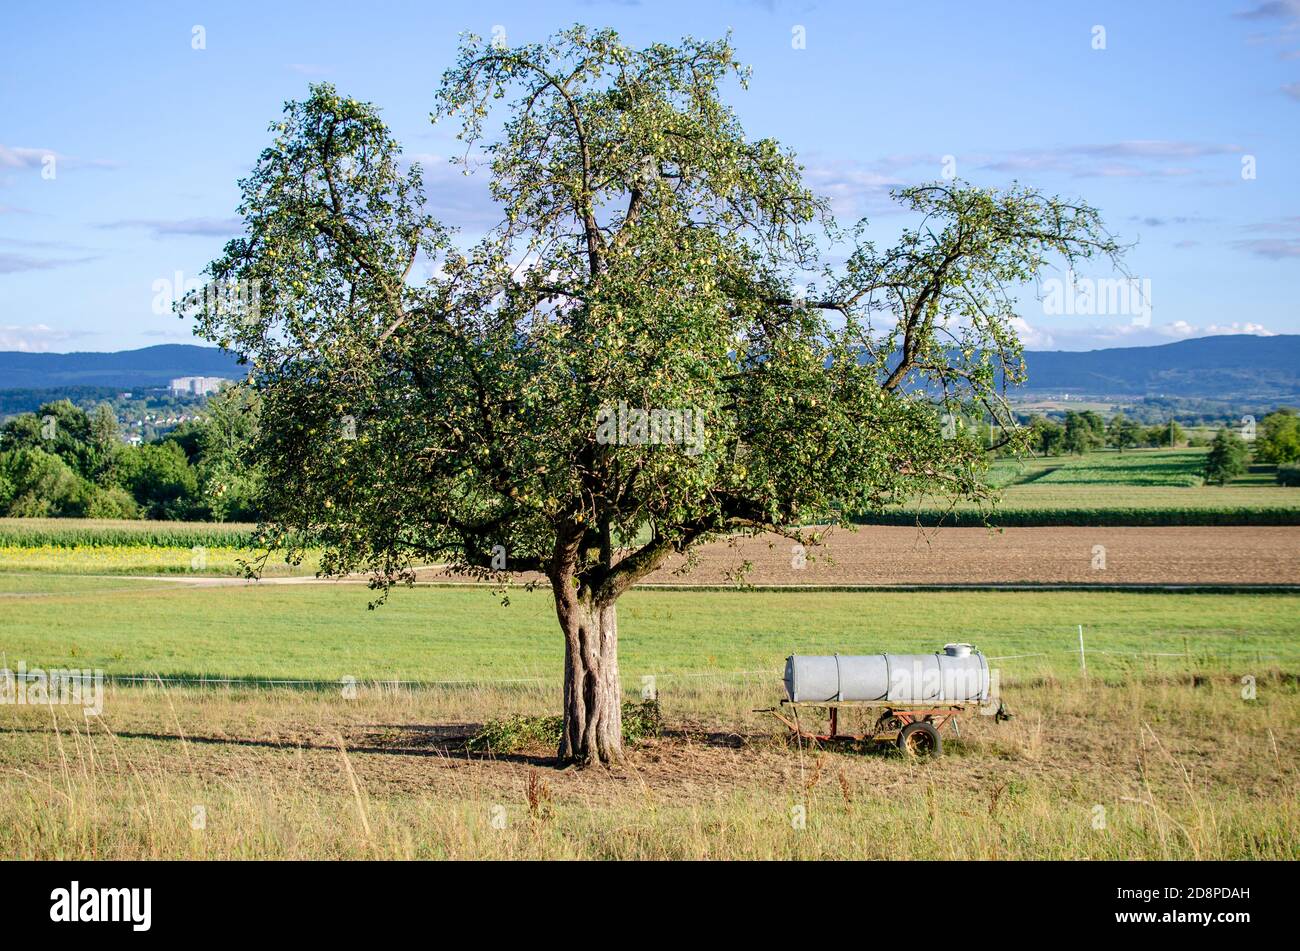 escena bucólica con el árbol y la máquina agrícola en el campo Foto de stock